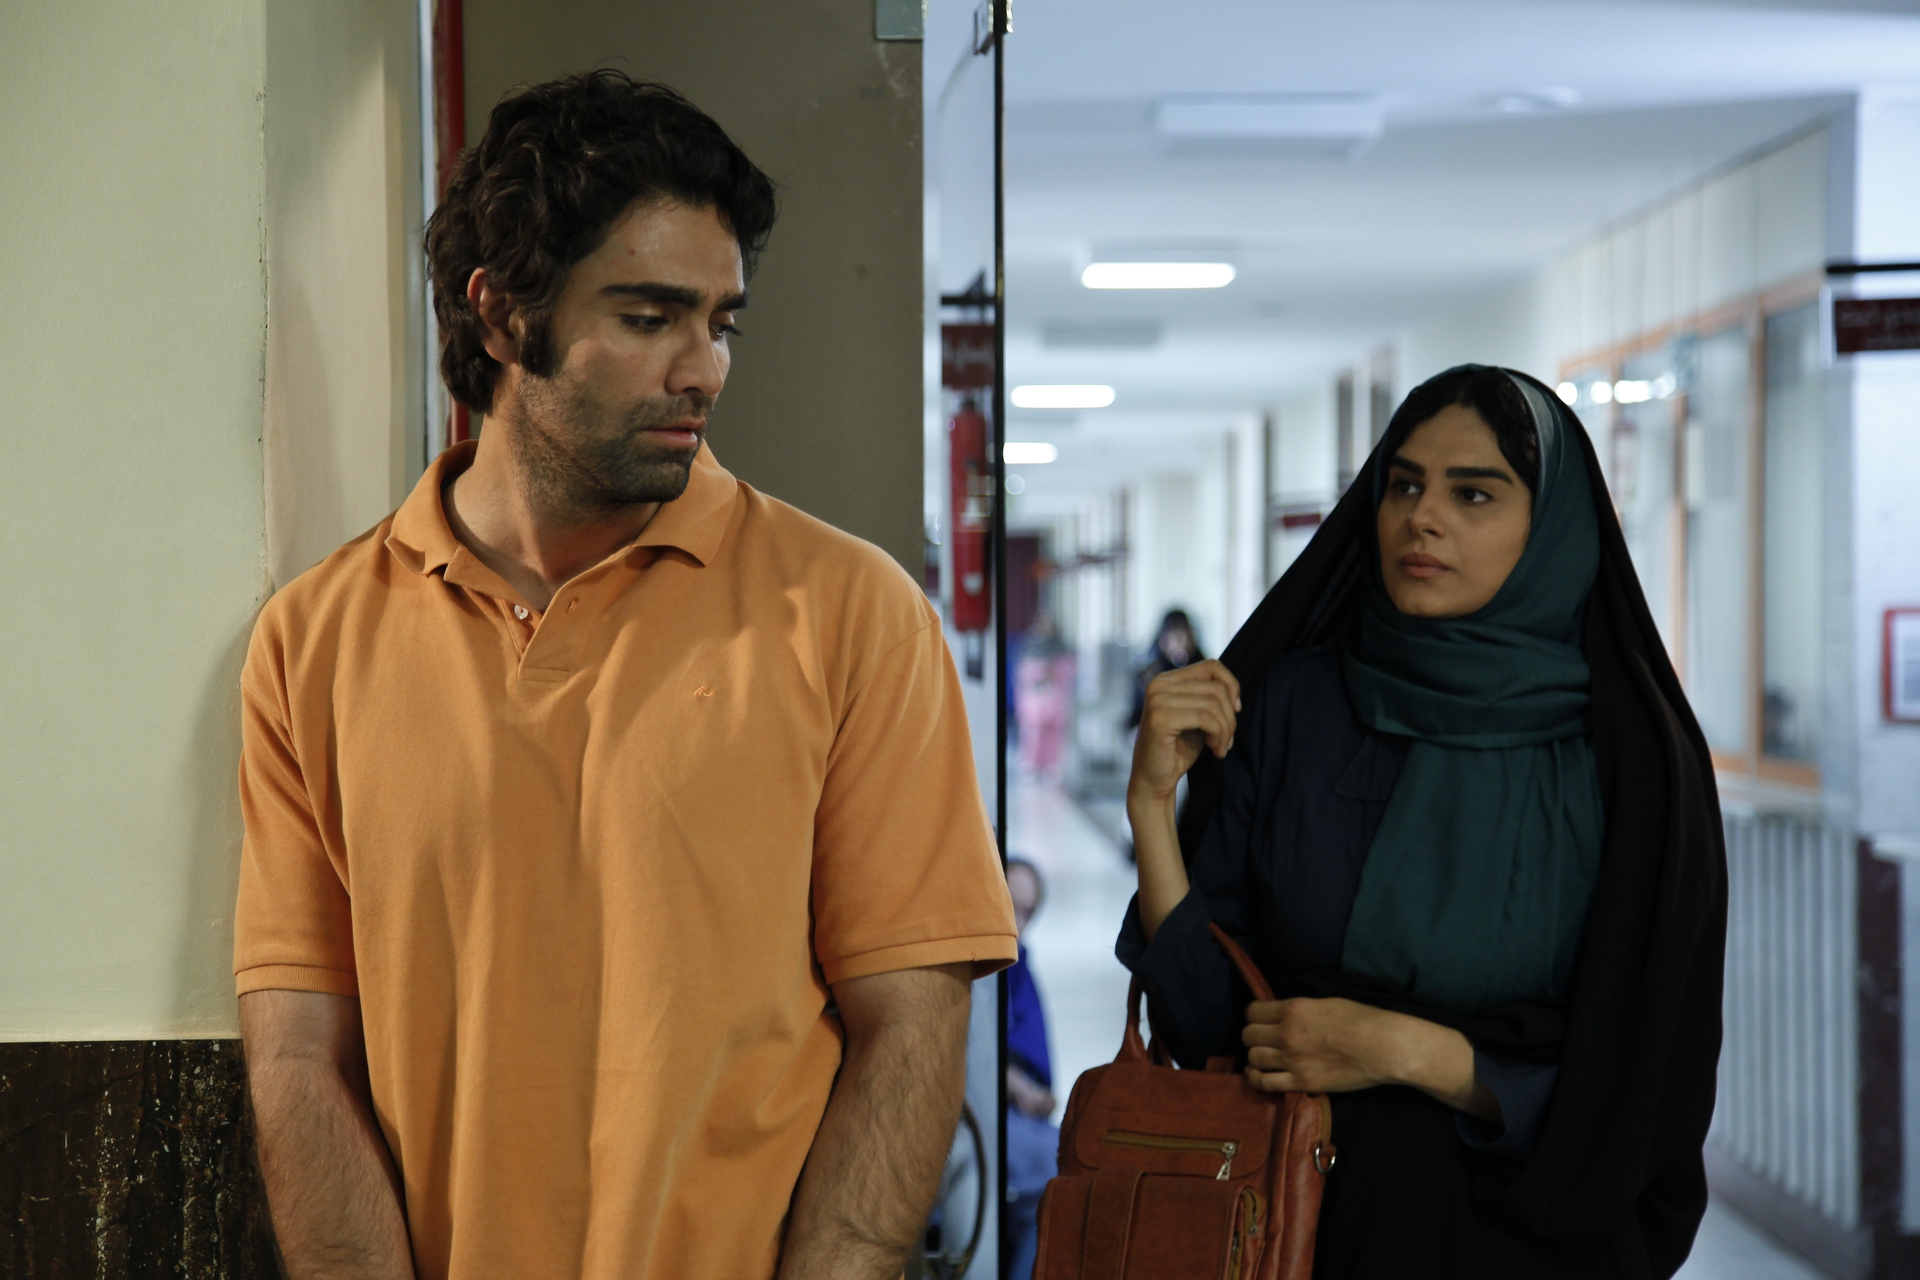 شهاب شادابی در صحنه فیلم سینمایی دعوتنامه